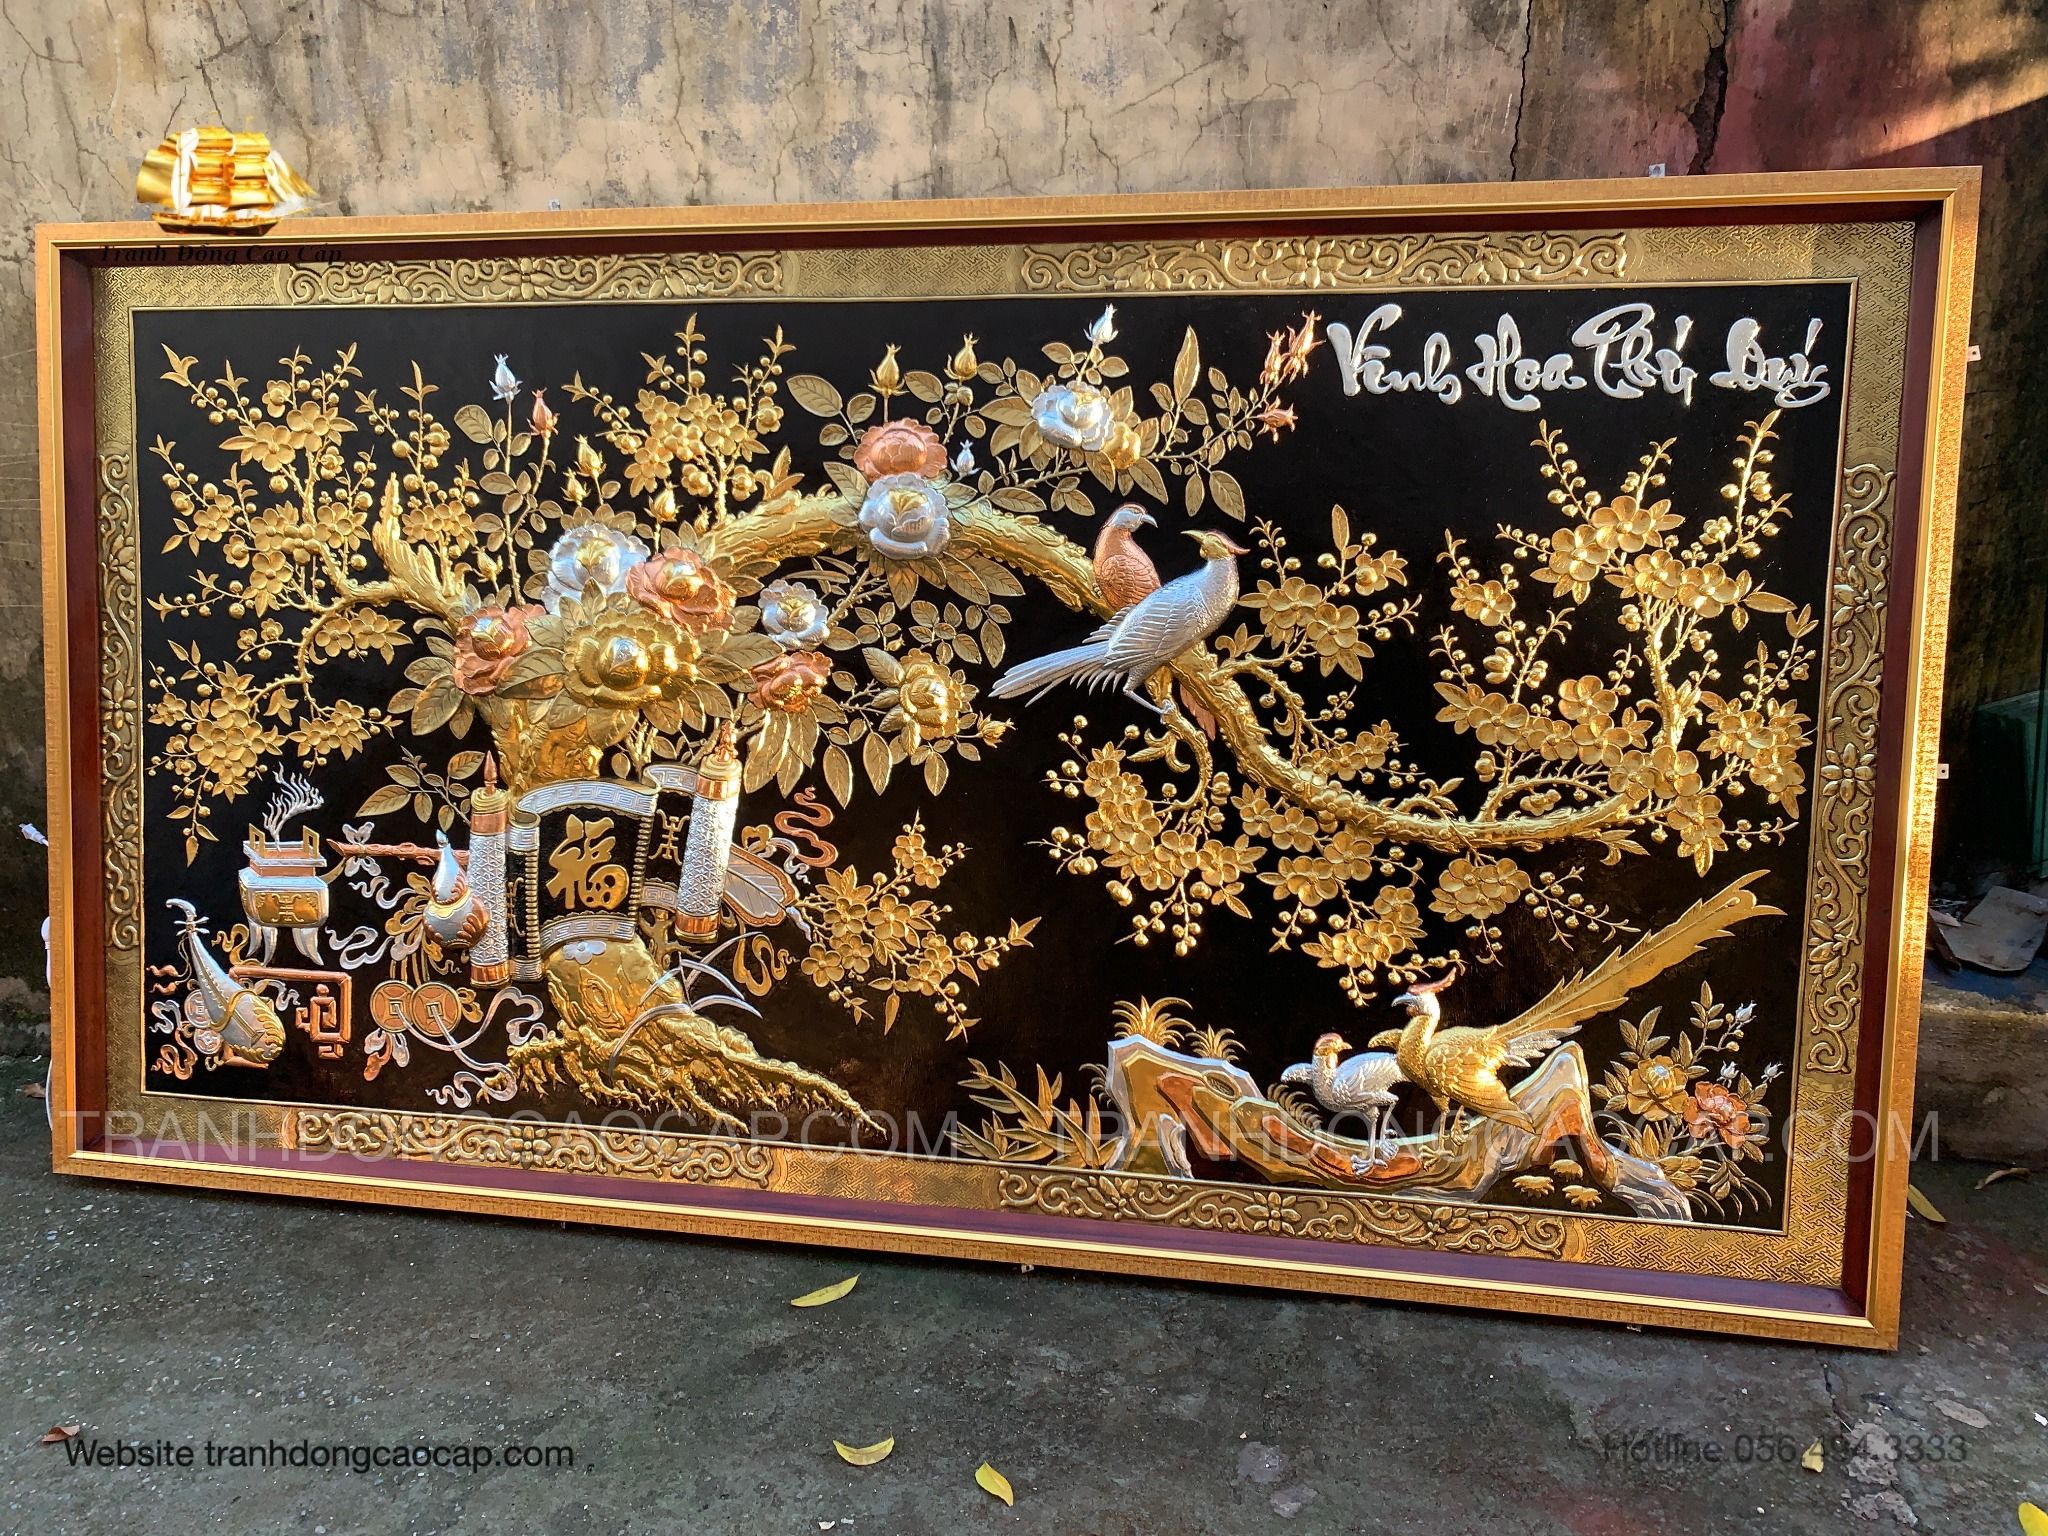  Mê Đồng Tranh Vinh Hoa Phú Quý Dát Vàng Bạc Cao Cấp ( kích thước 107cm x 197cm ) 